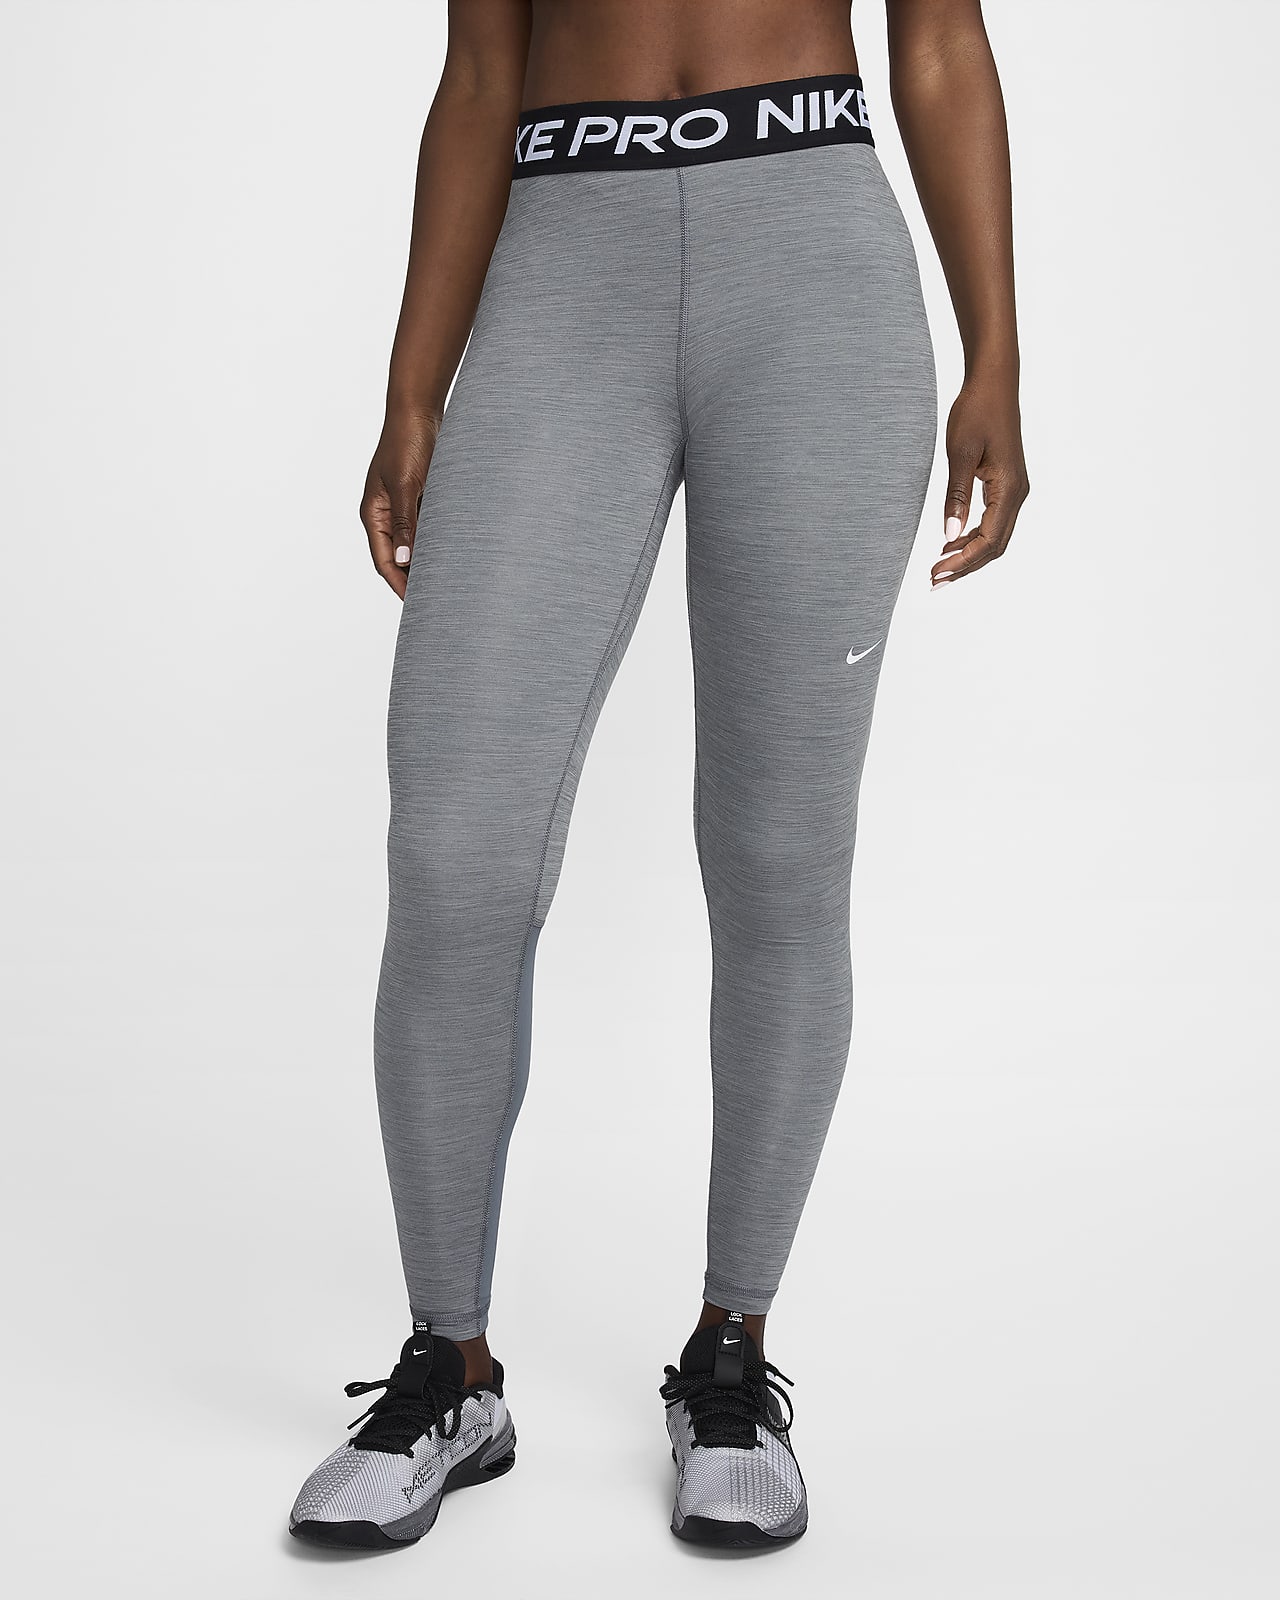 Legging taille mi-haute à empiècements en mesh Nike Pro pour Femme